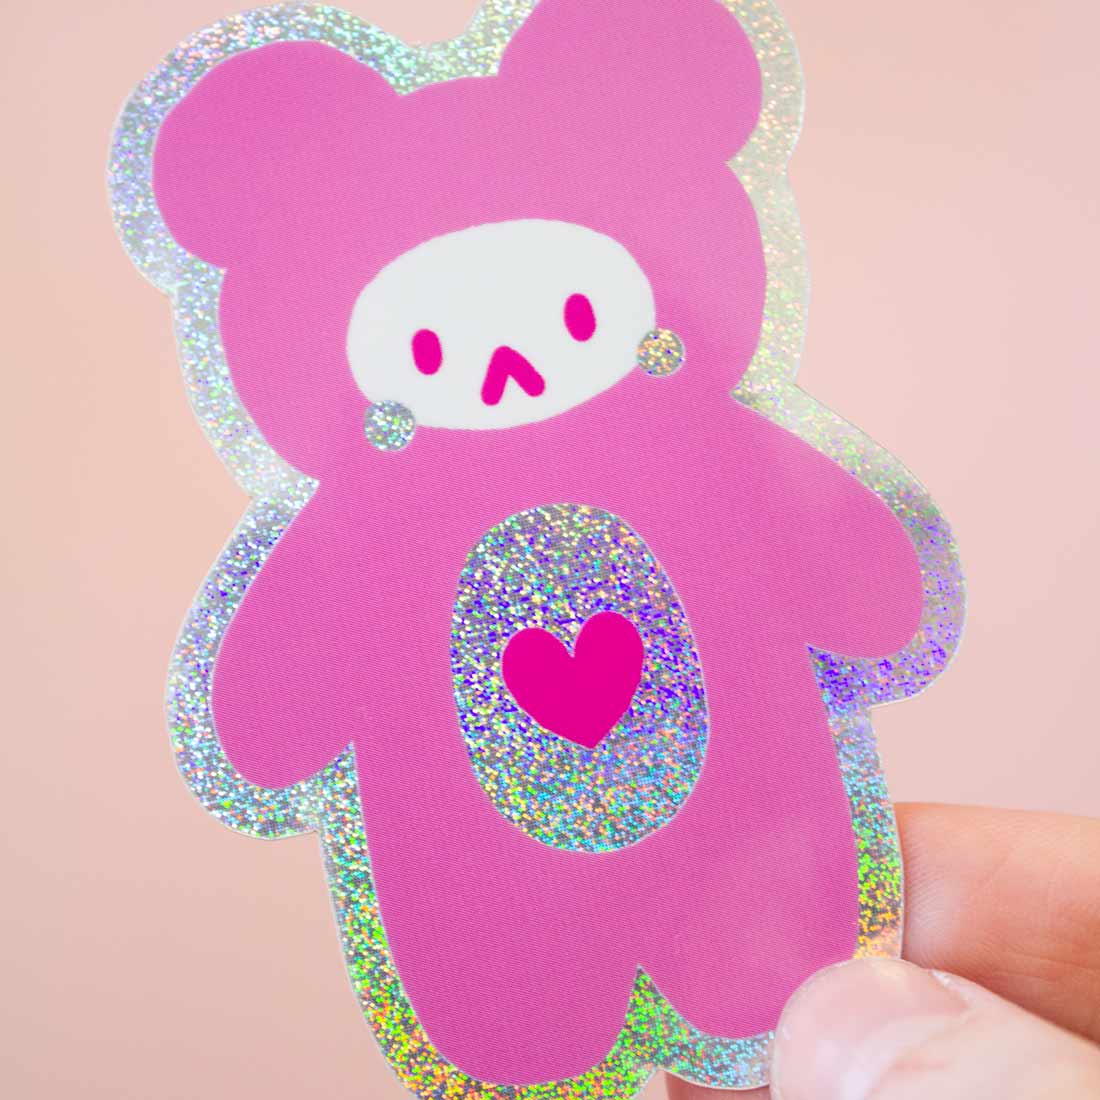 Shiny Teddy "Pixie Dust" Sticker 3"